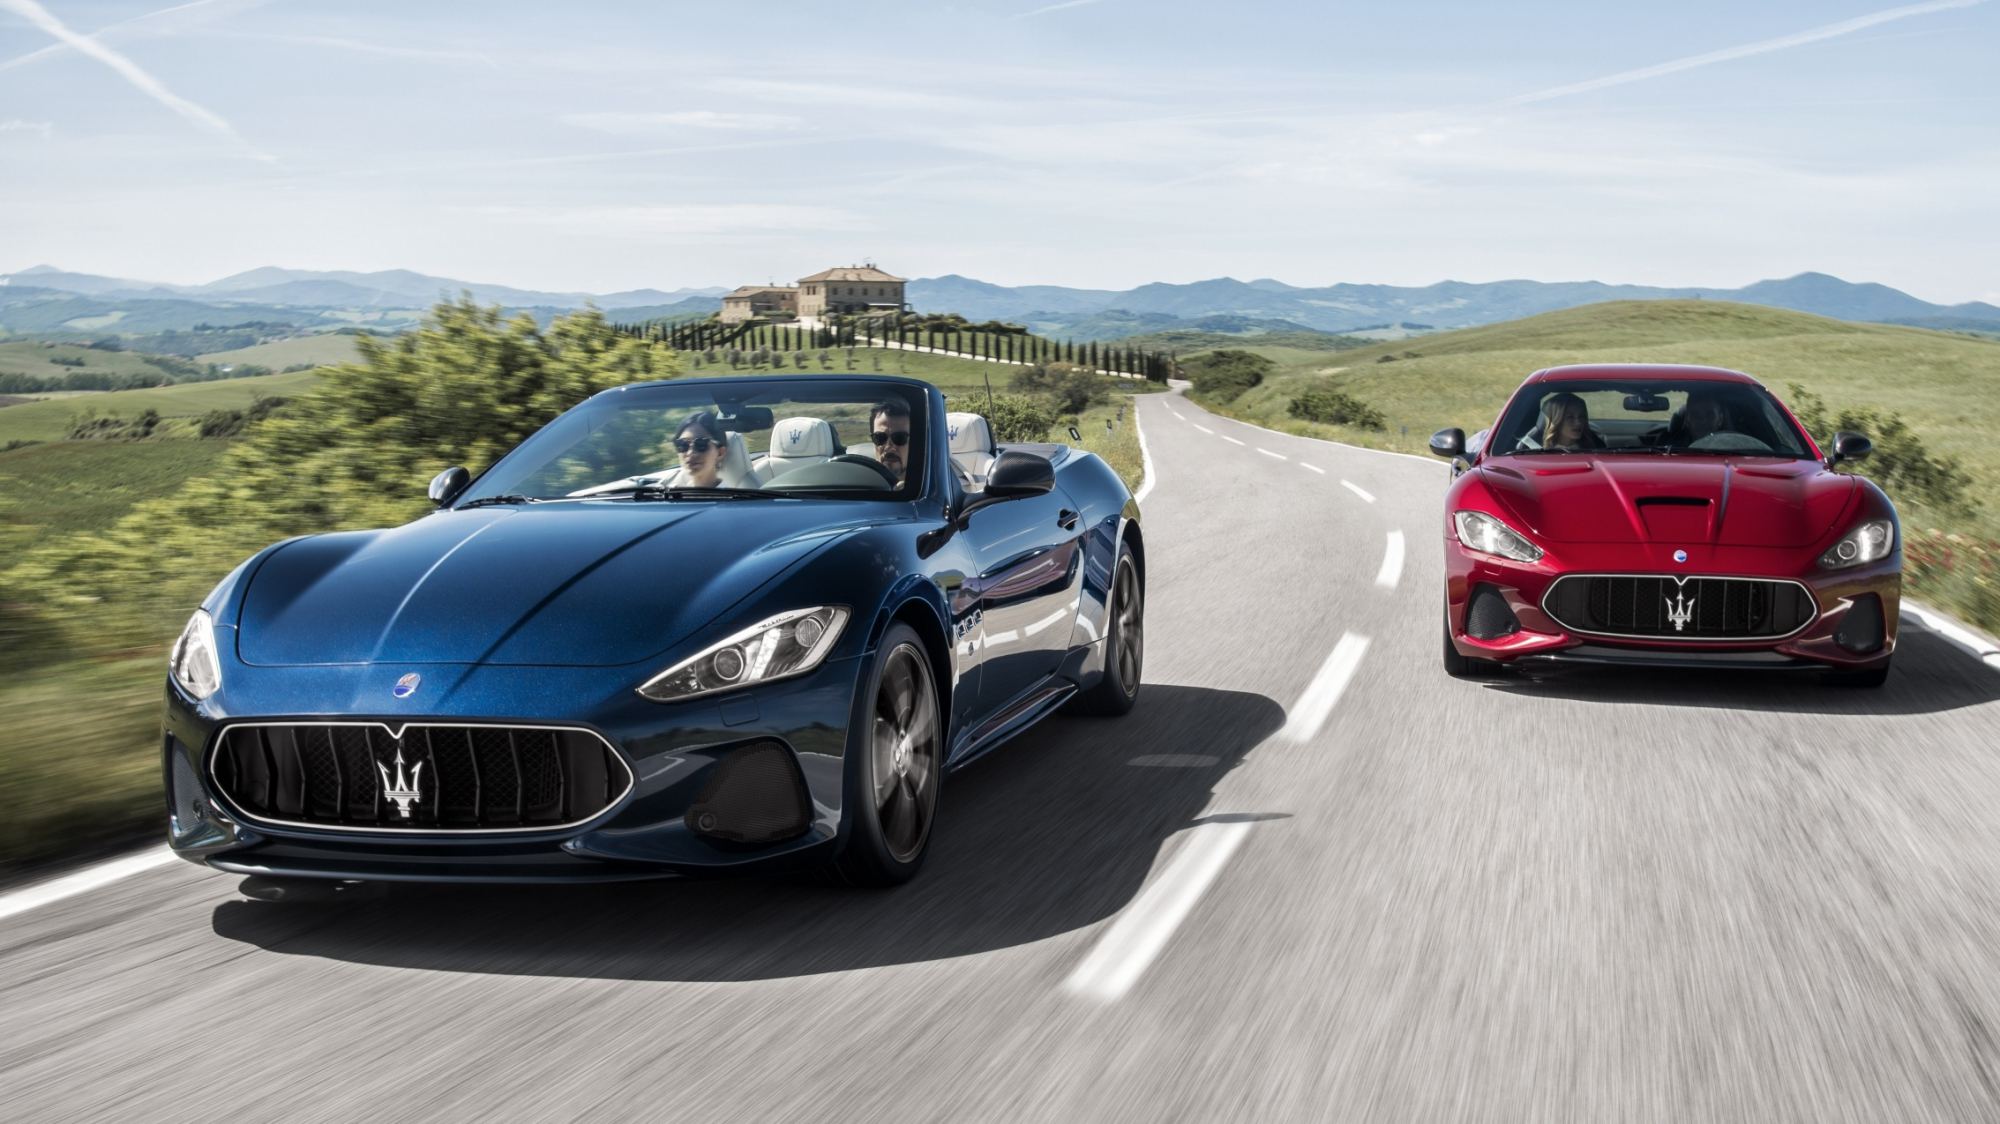 News - Maserati's 2018 GranTurismo, GranCabrio Rolls Into ...